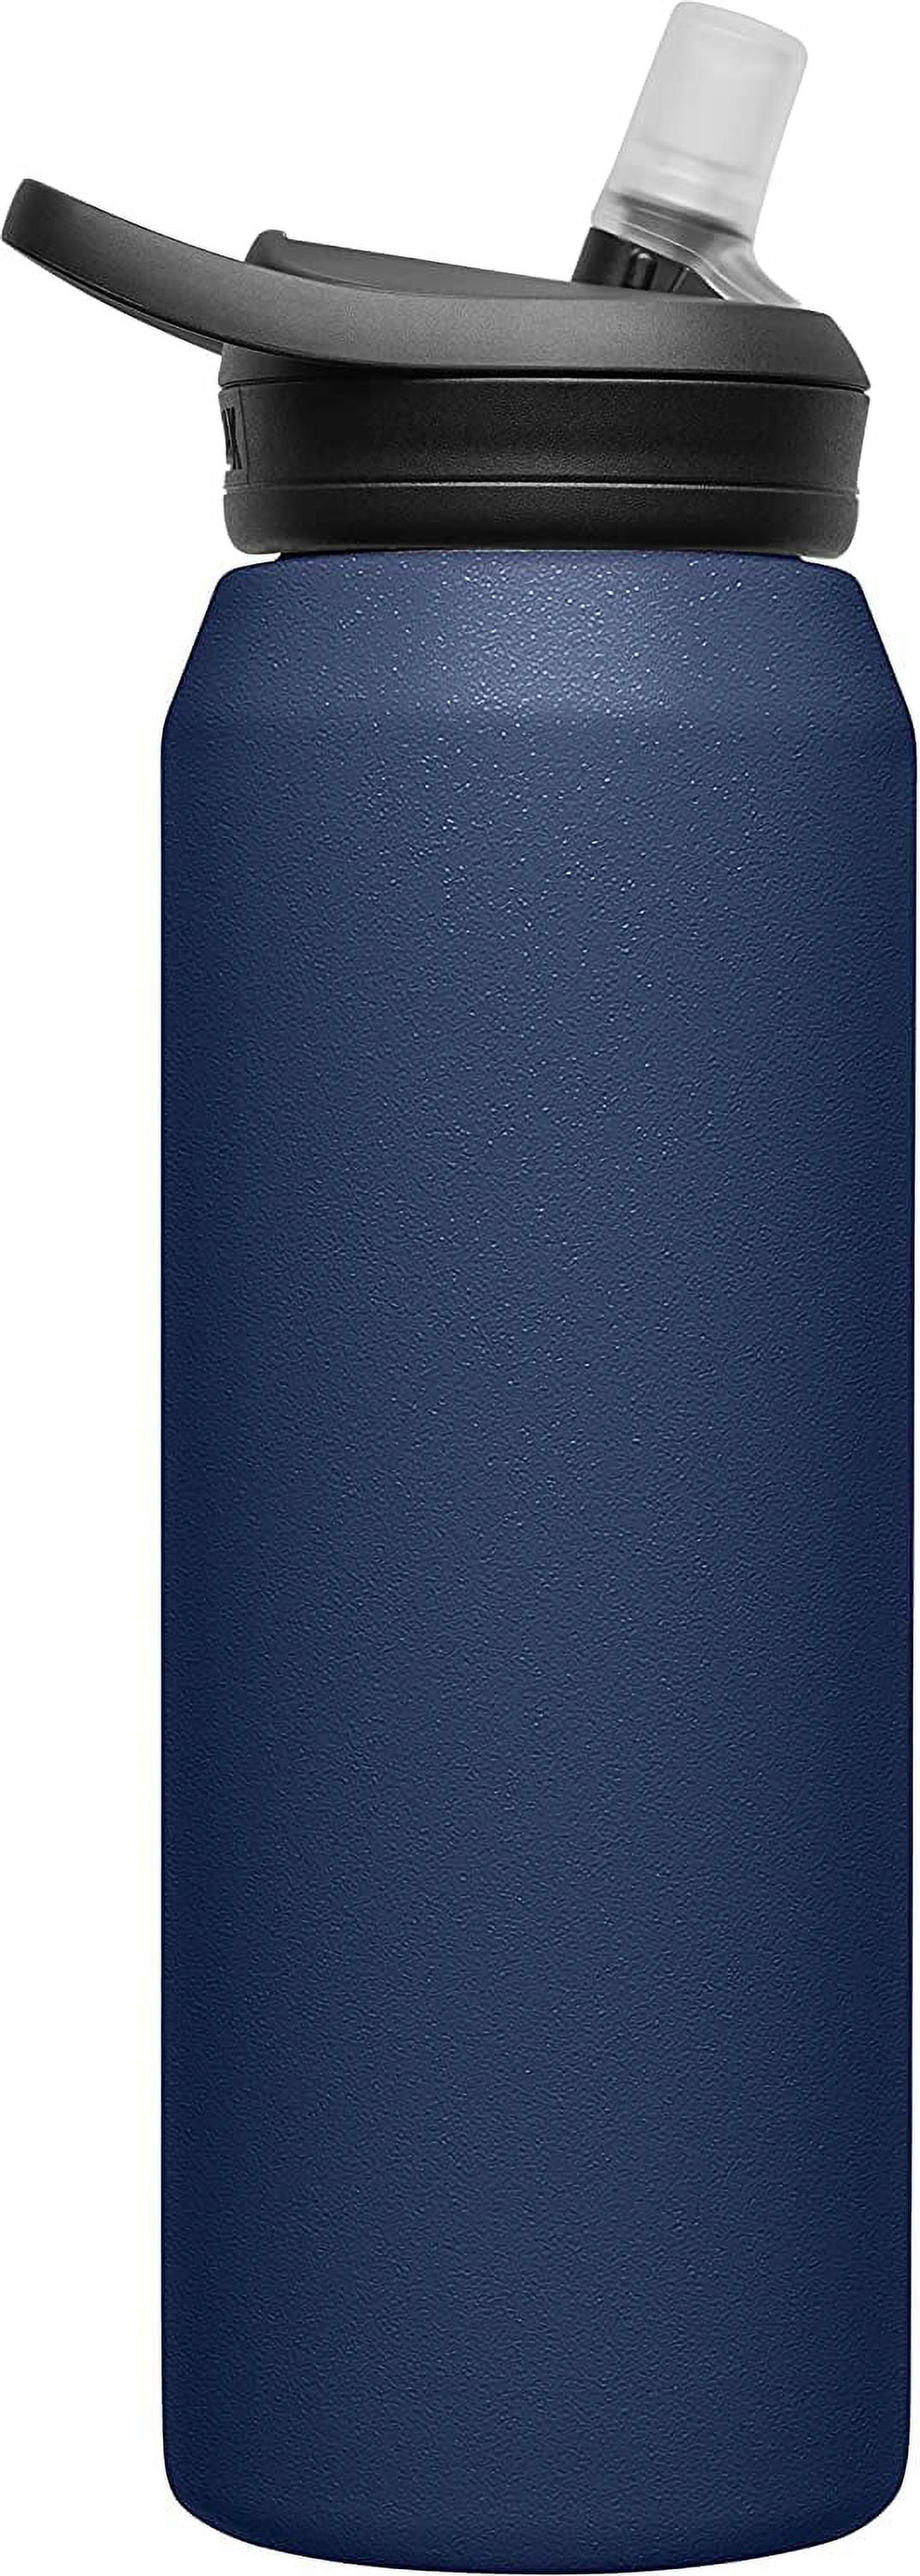 Camelbak Eddy+ Stainless Steel Bottle - Blue, 32 oz - Kroger